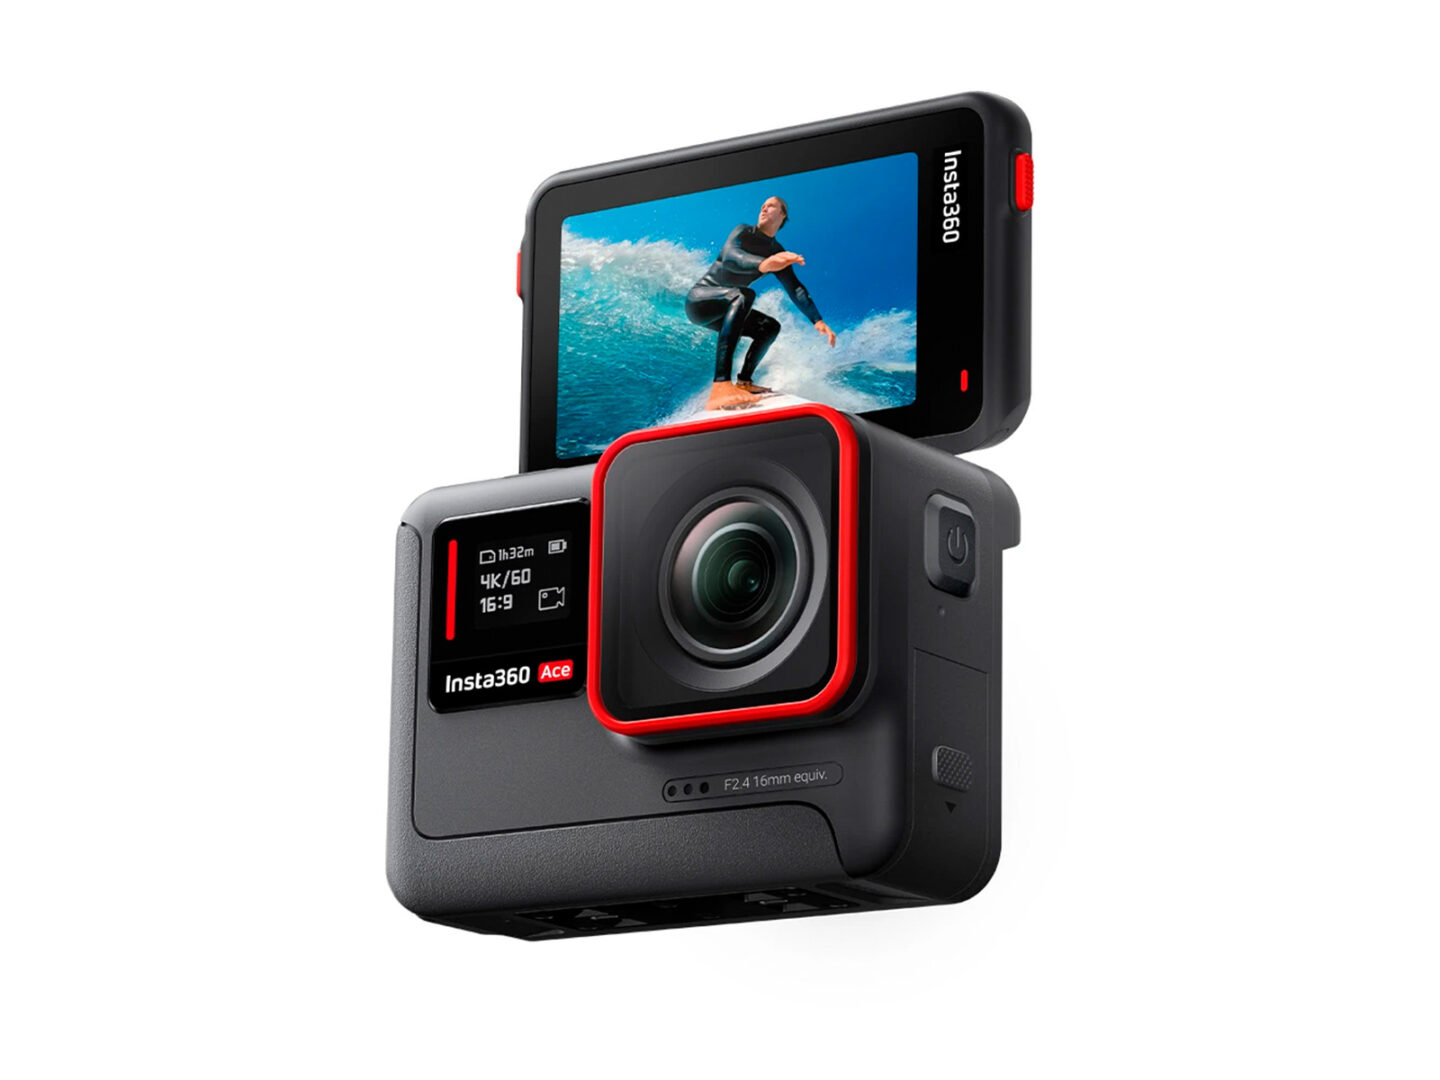 Insta360 se asocia con Leica para la cámara de acción Ace Pro